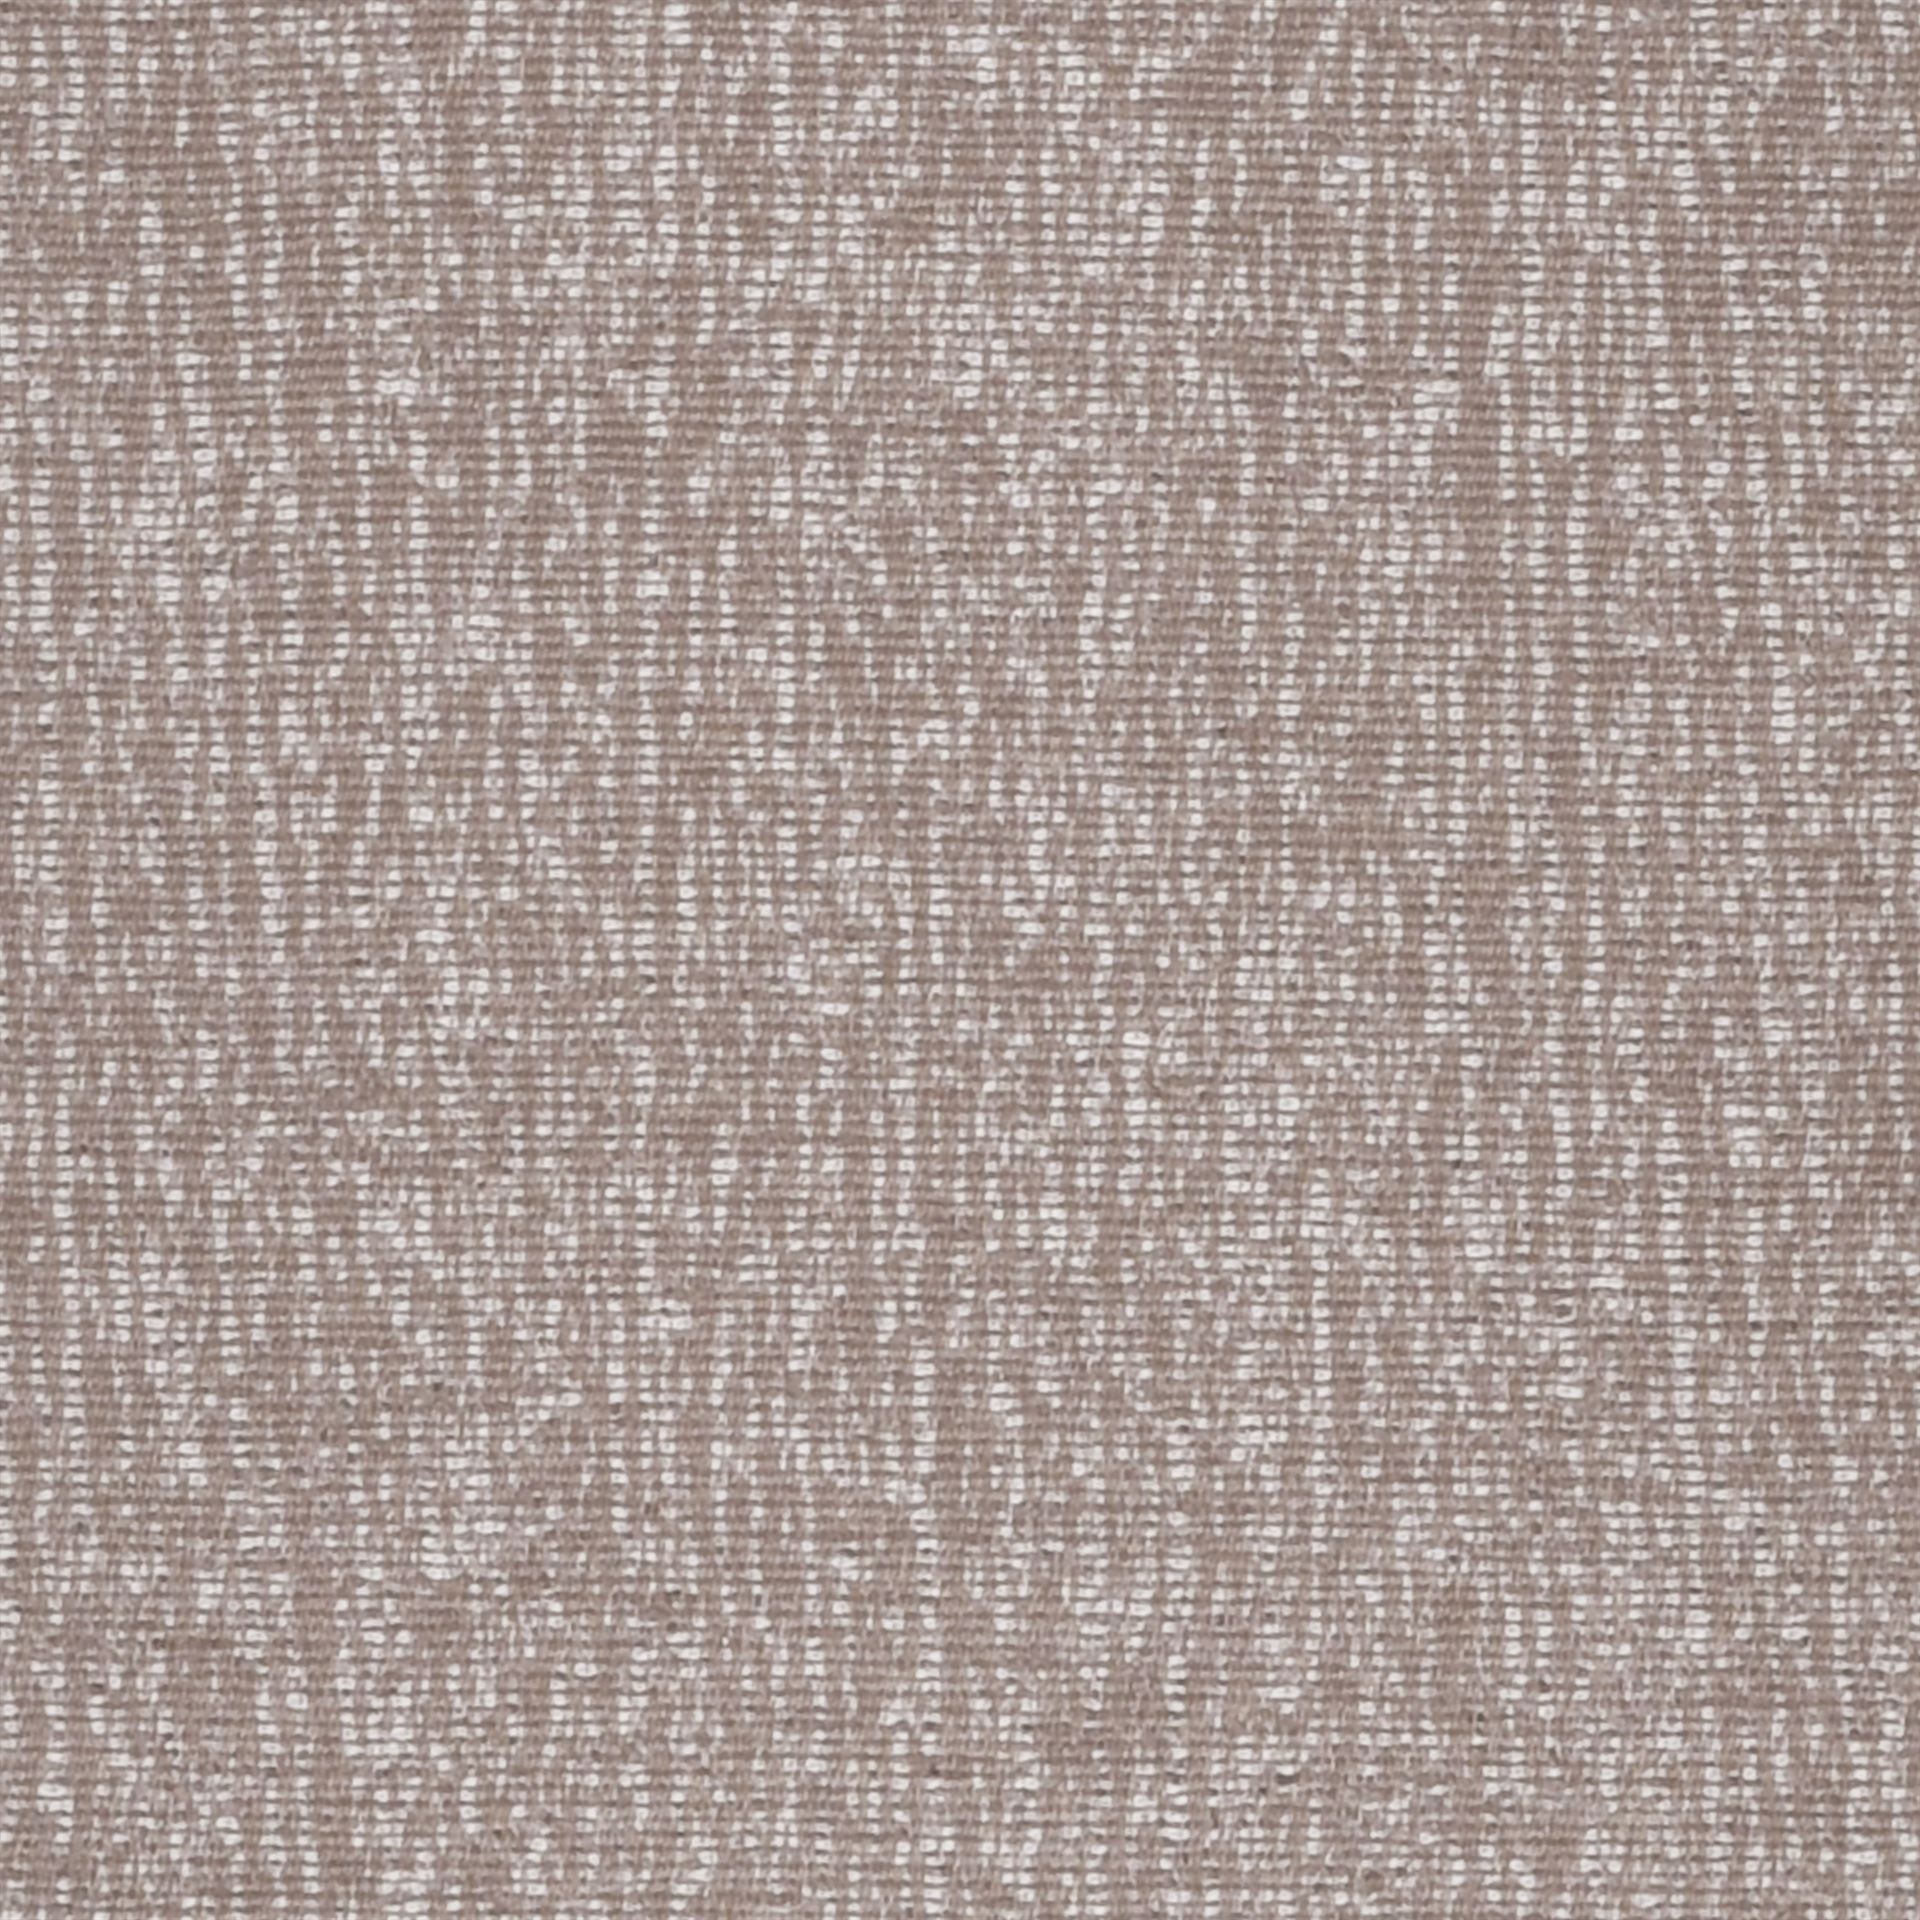 Грубая ткань 5 букв. Обои Italreflexes Lino ln15. Текстурная ткань. Текстура ткани. Мебельная ткань.